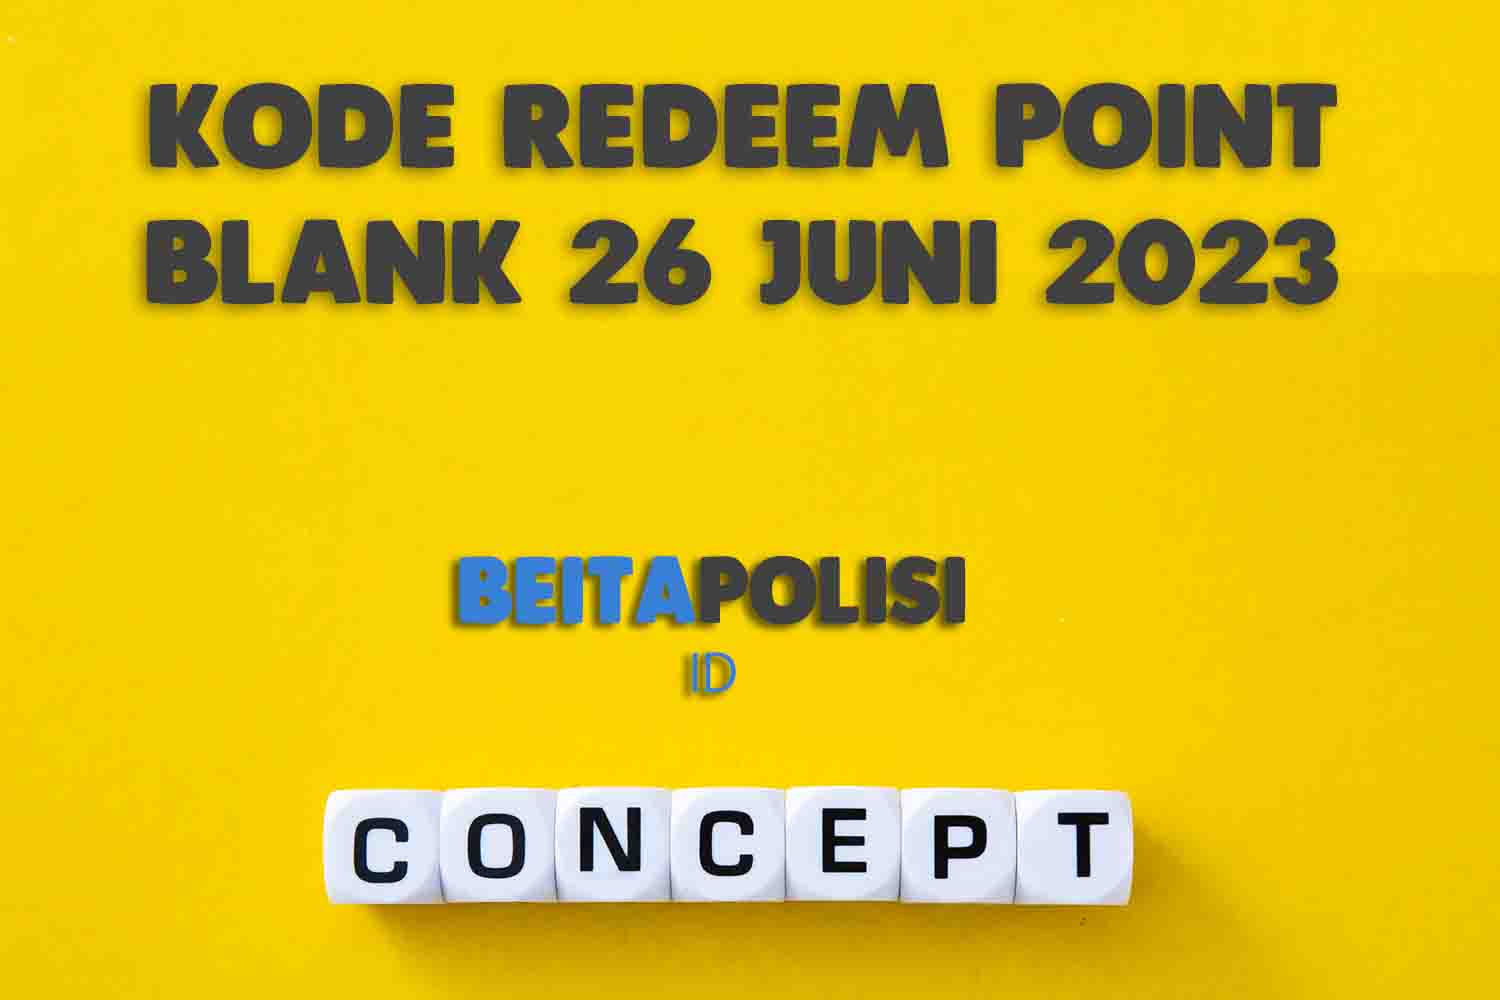 Kode Redeem Point Blank 26 Juni 2023 Terbaru